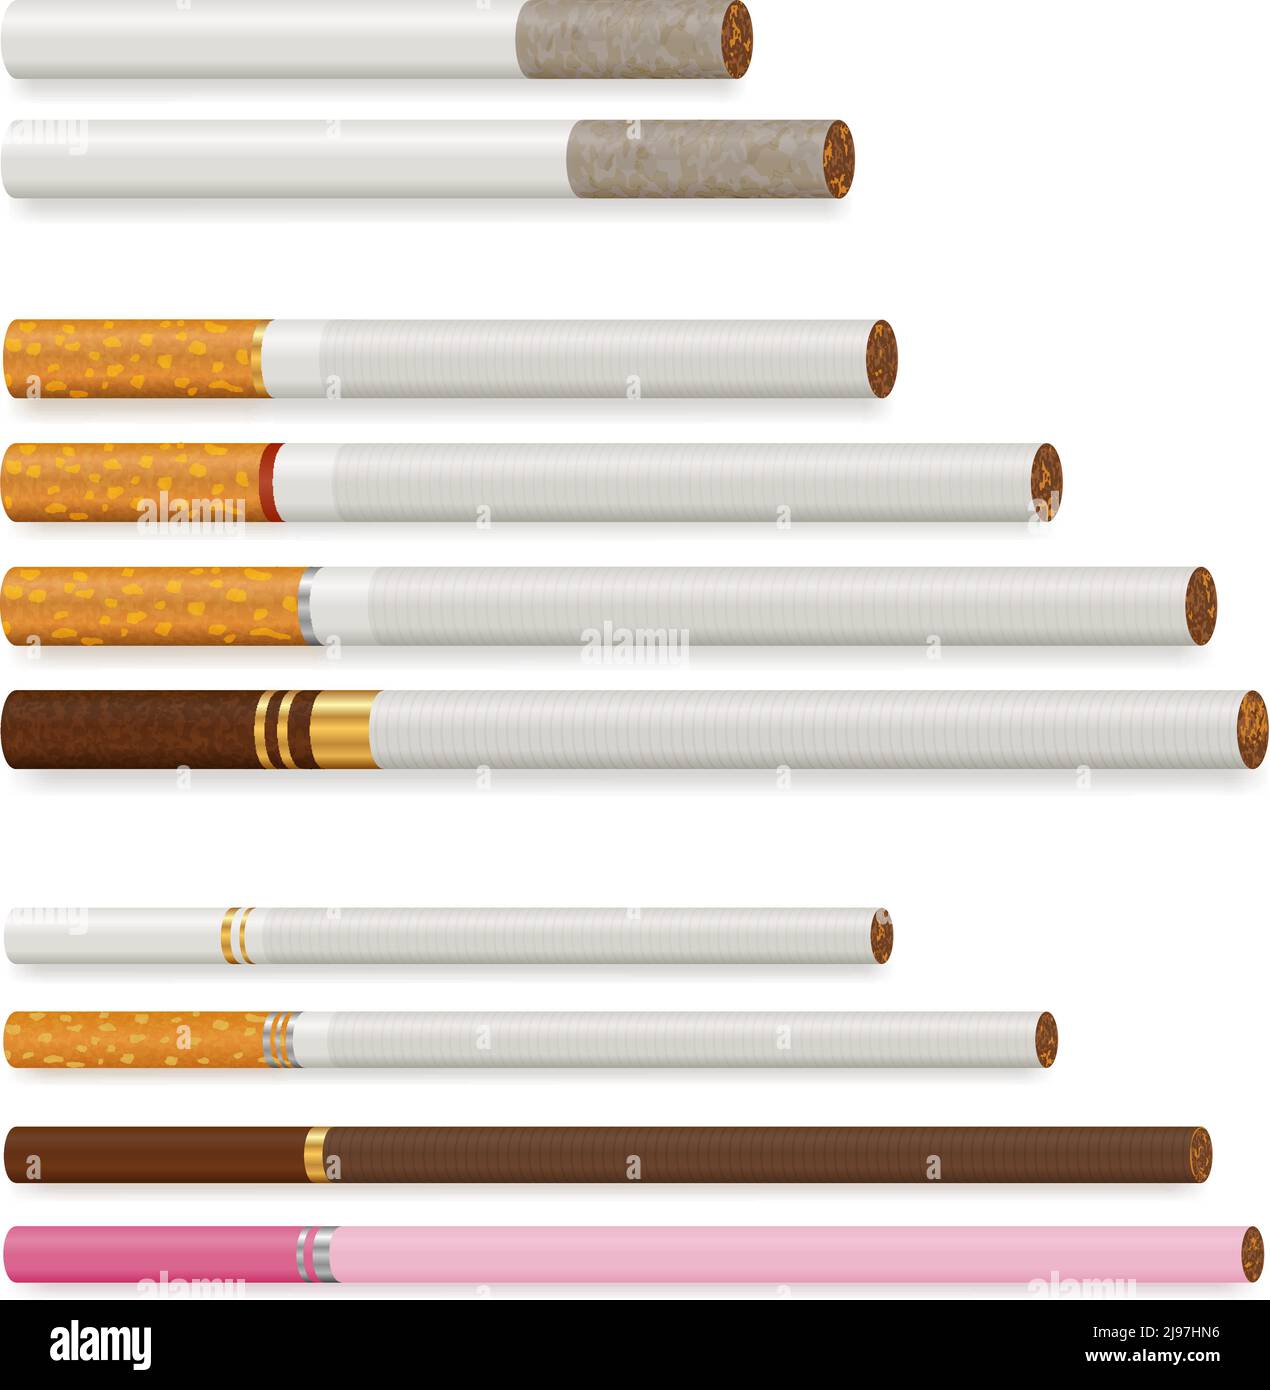 Différentes cigarettes de taille et de couleur différentes ensemble réaliste isolé illustration vectorielle sur fond blanc Illustration de Vecteur